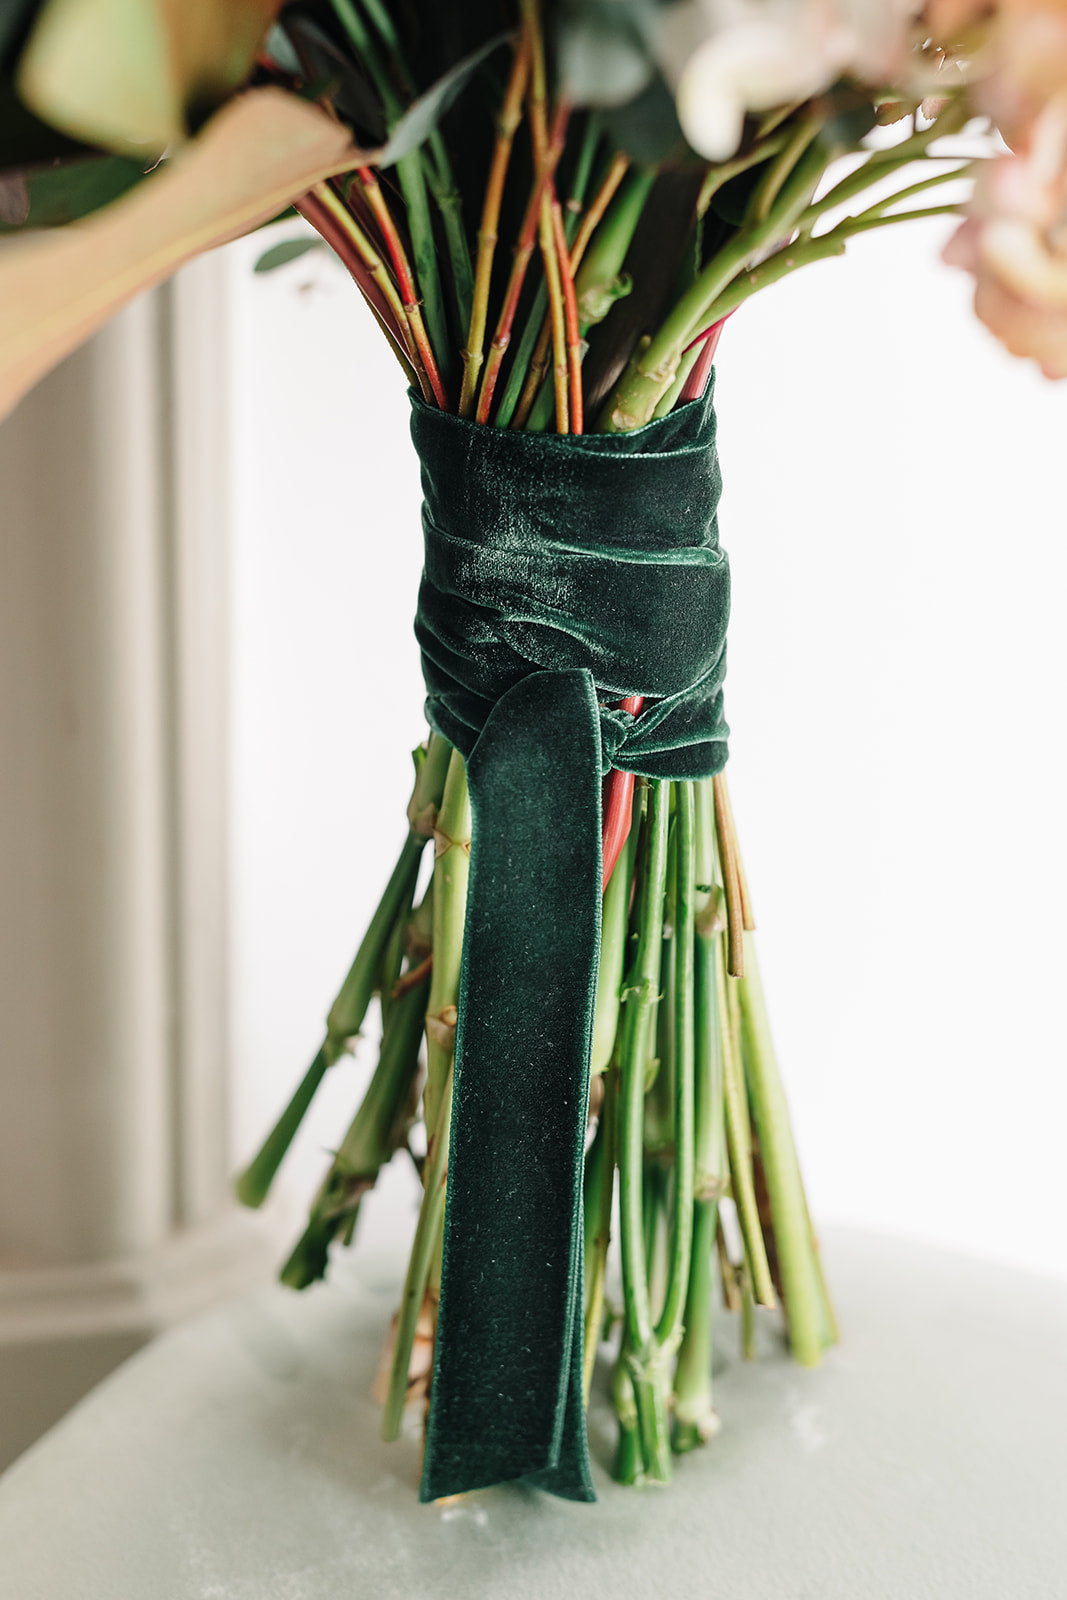 Cinta para ramo | Velvet verde-cinta de terciopelo, cintas para ramo, terciopelo verde-Loovshoes